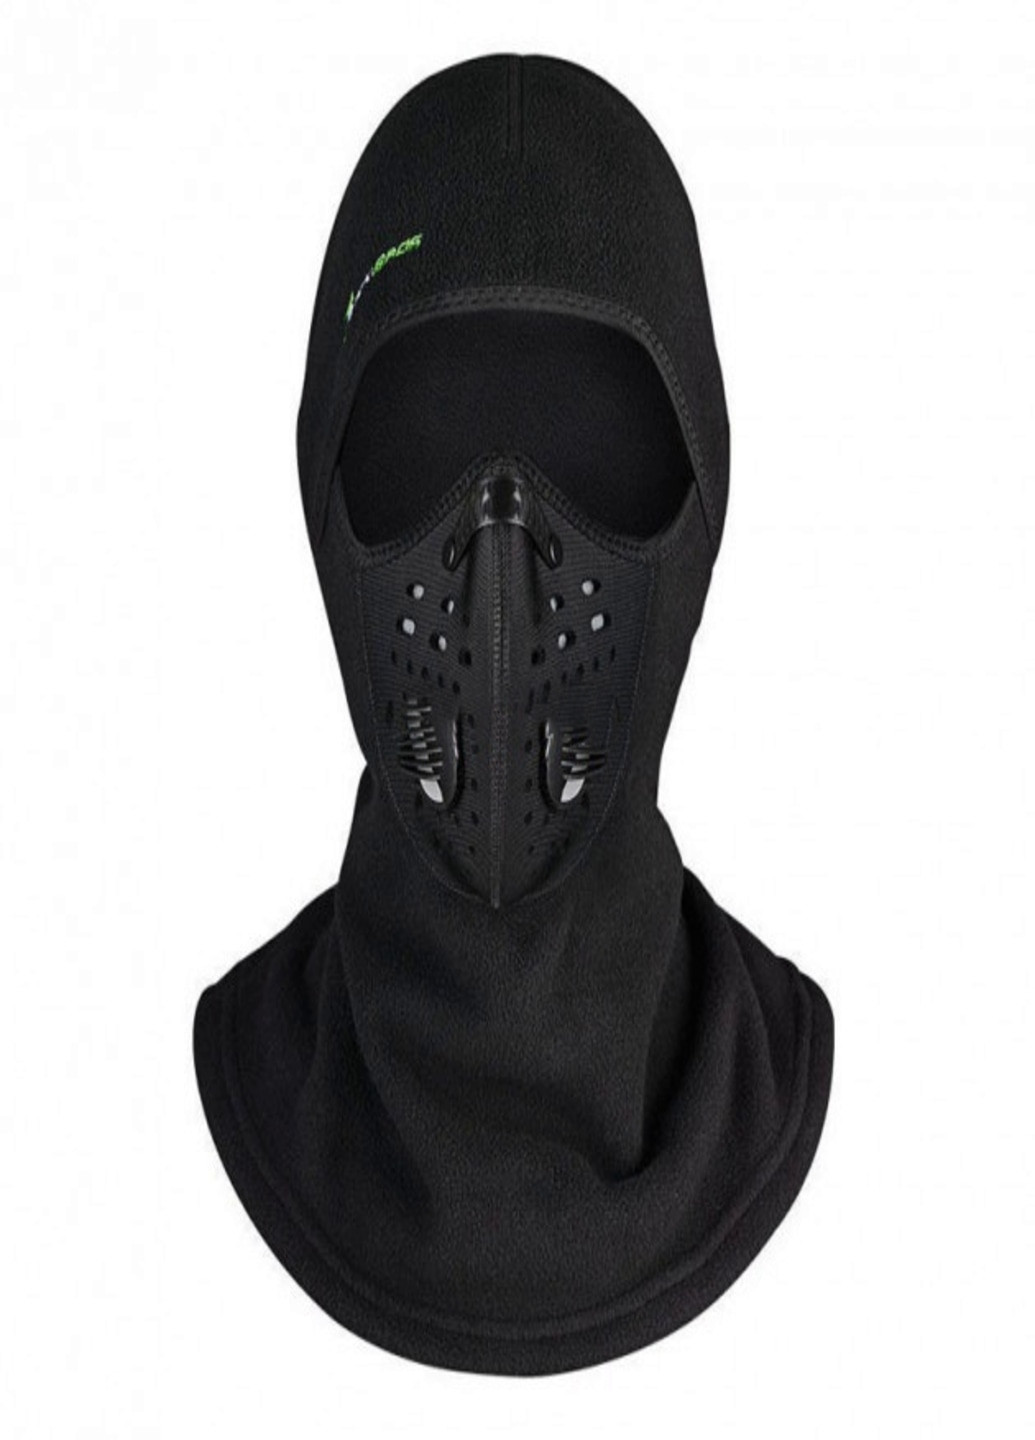 Francesco Marconi балаклава флис баф маска бандана шарф лыжная шапка трансформер (259791265) однотонный черный спортивный производство - Китай